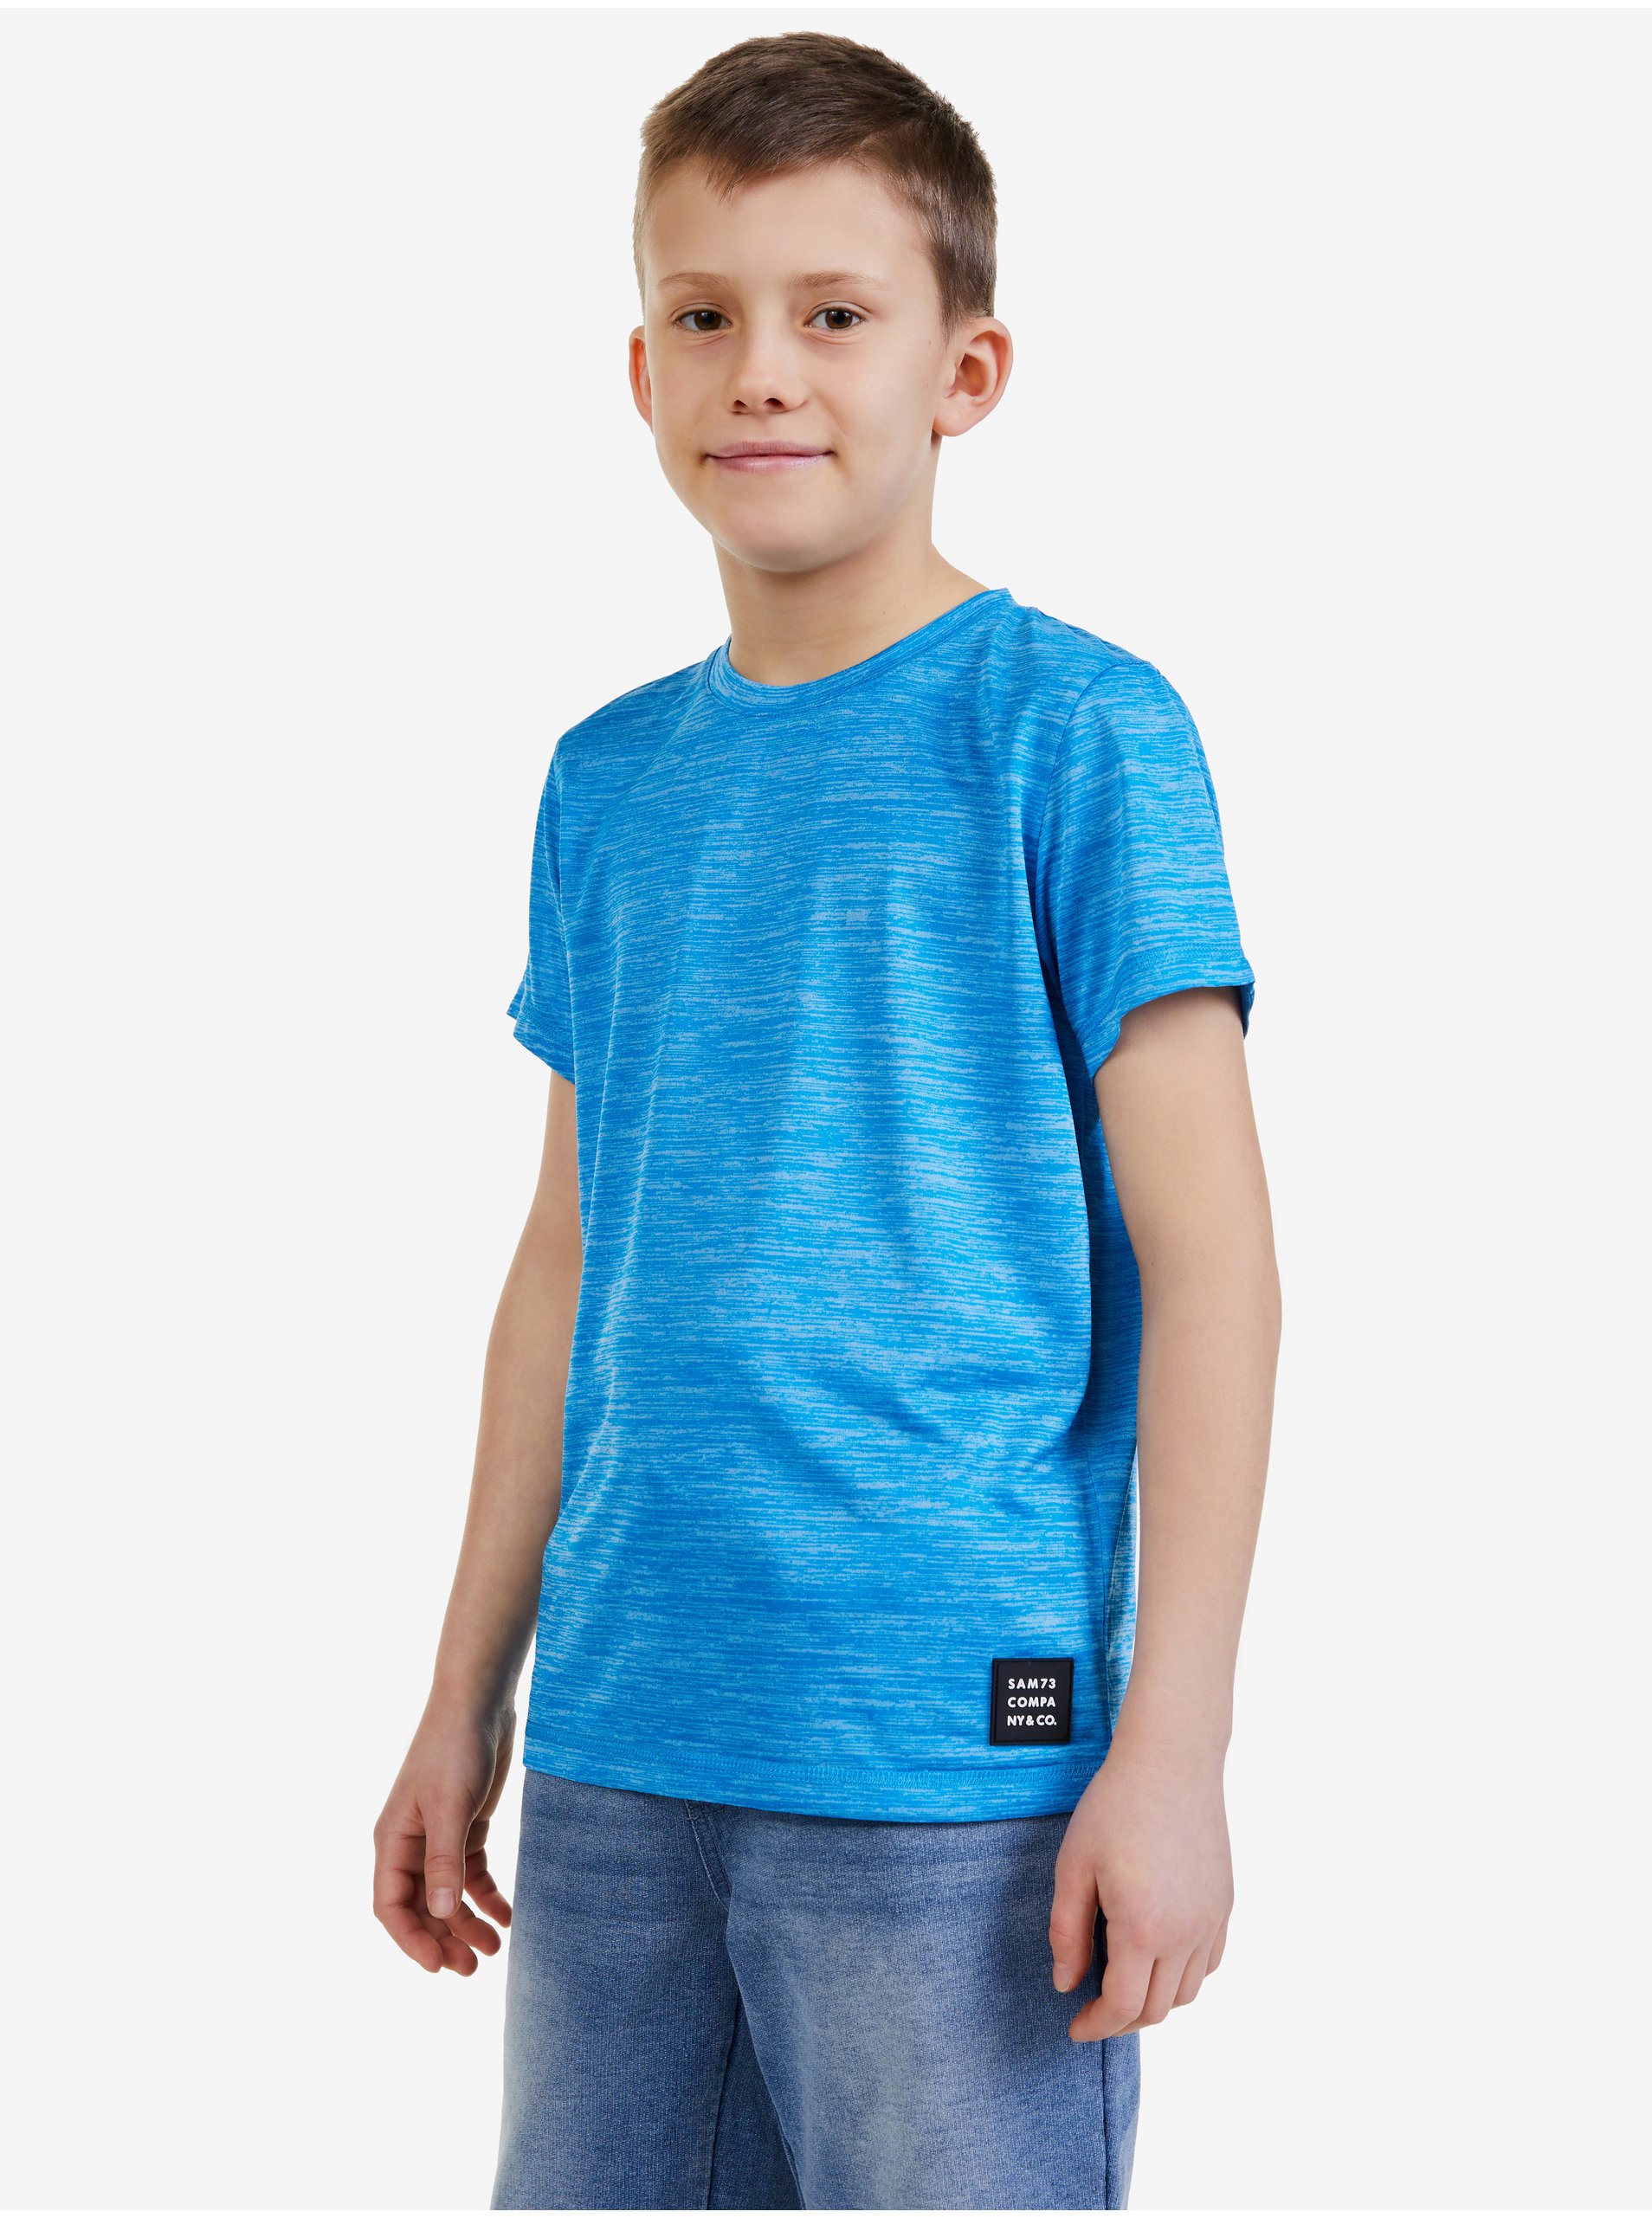 E-shop Modré chlapecké tričko SAM 73 Bronwen